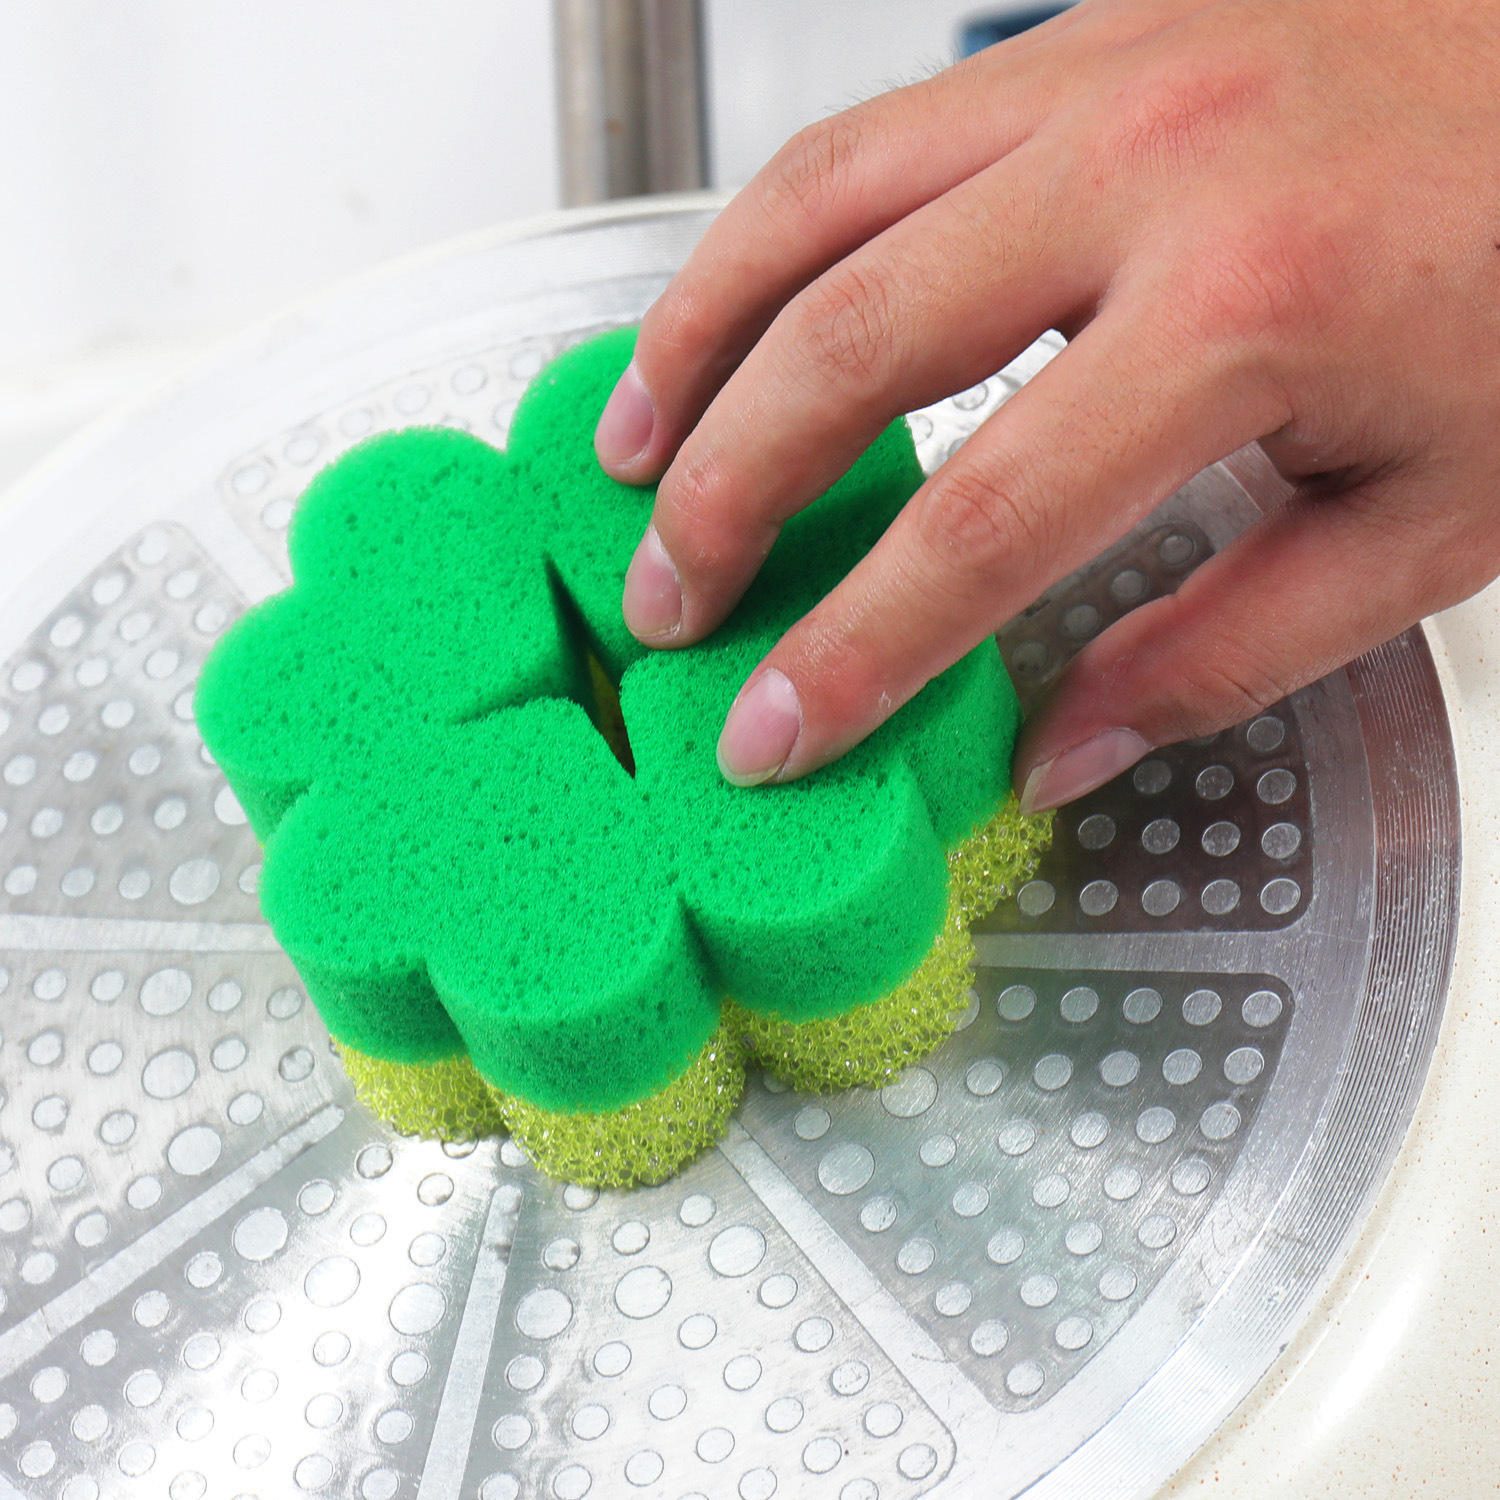 Durable Double-Sided Dishwashing Sponge